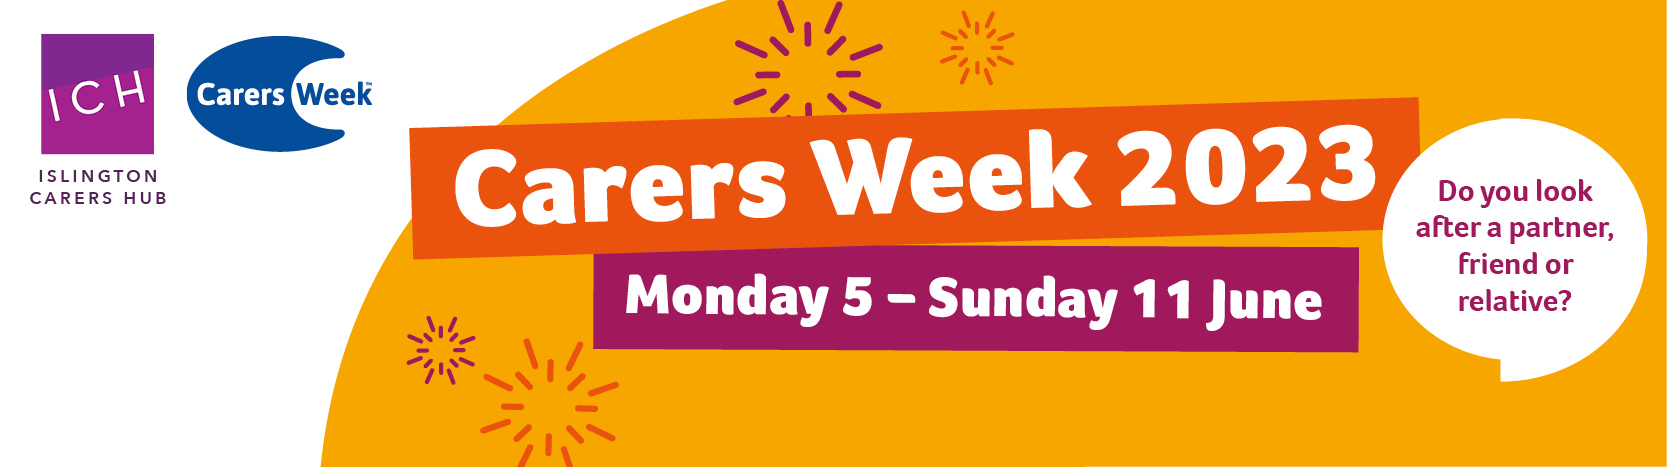 Carers week 2023_website banner_v1